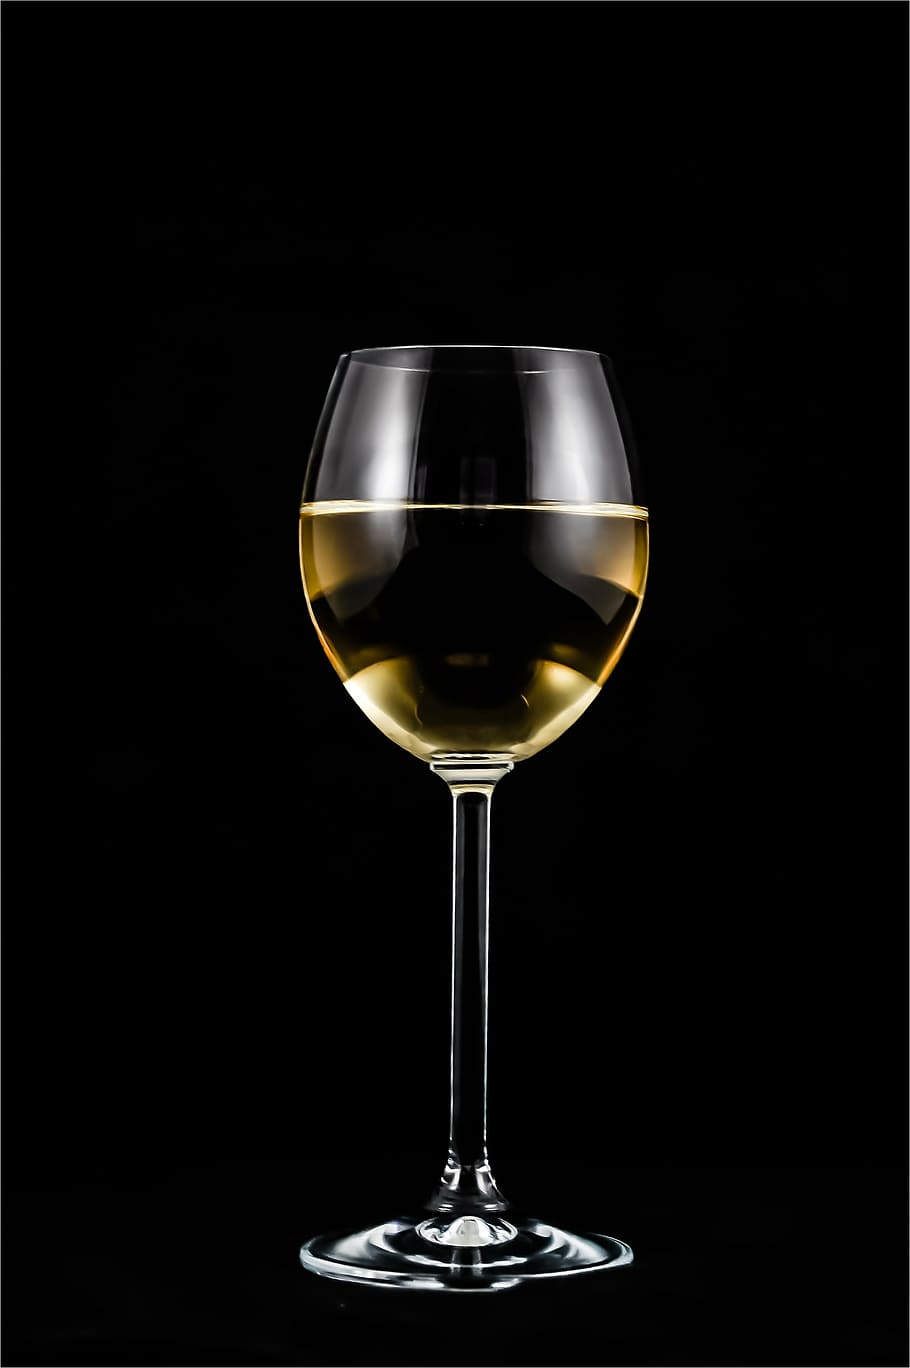 foto, gelas, putih, hitam, latar belakang, segelas anggur, anggur, alkohol, pernikahan, segelas